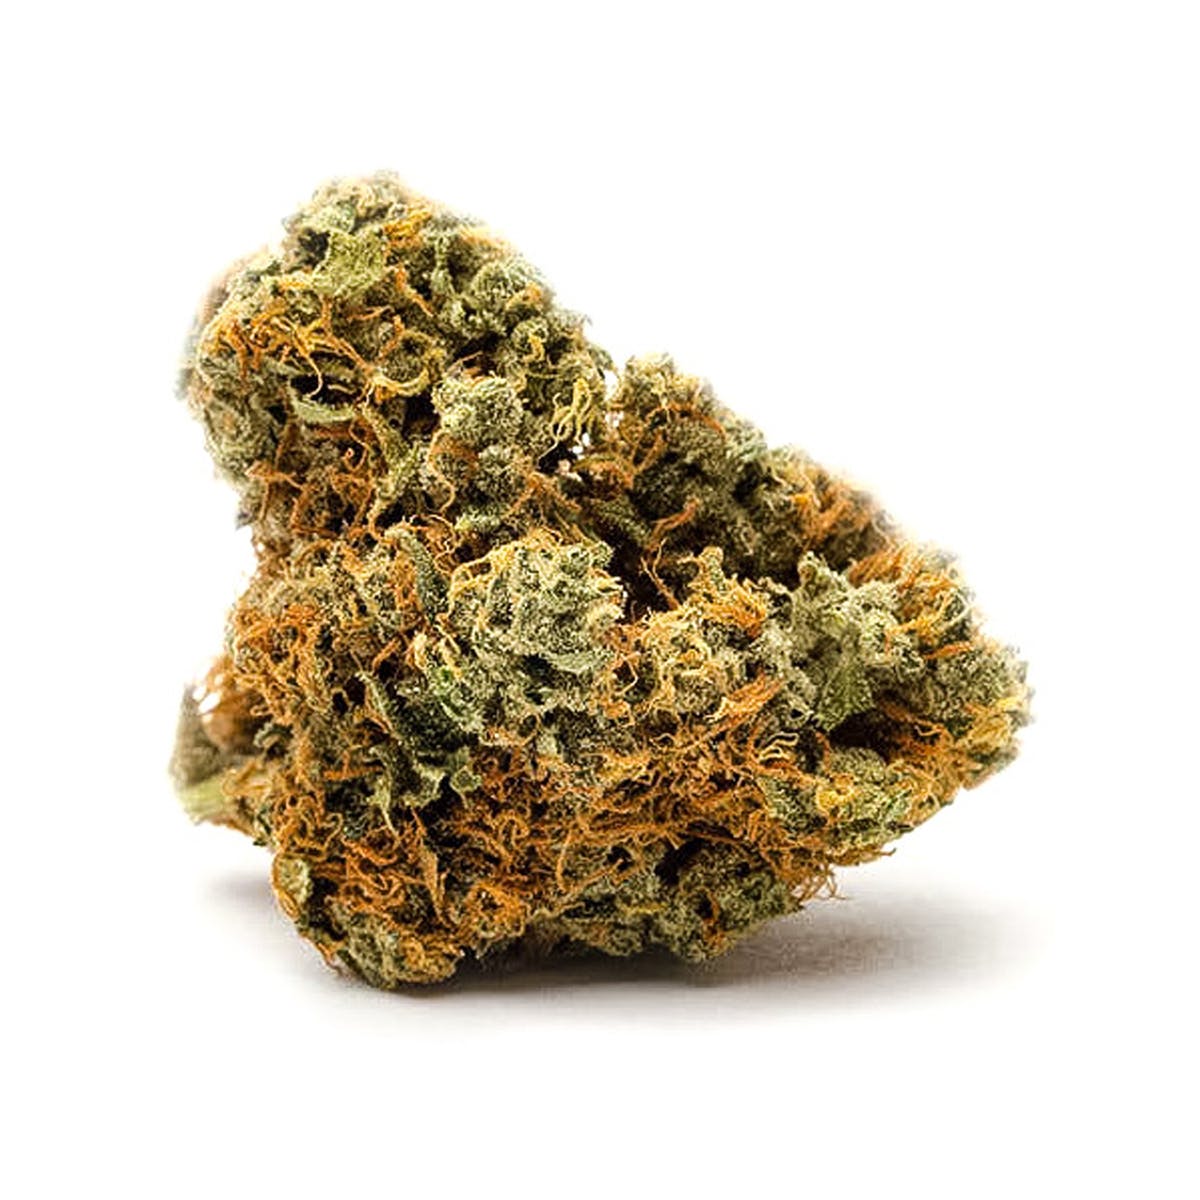 marijuana-dispensaries-hello-wellness-in-pinconning-sour-kush